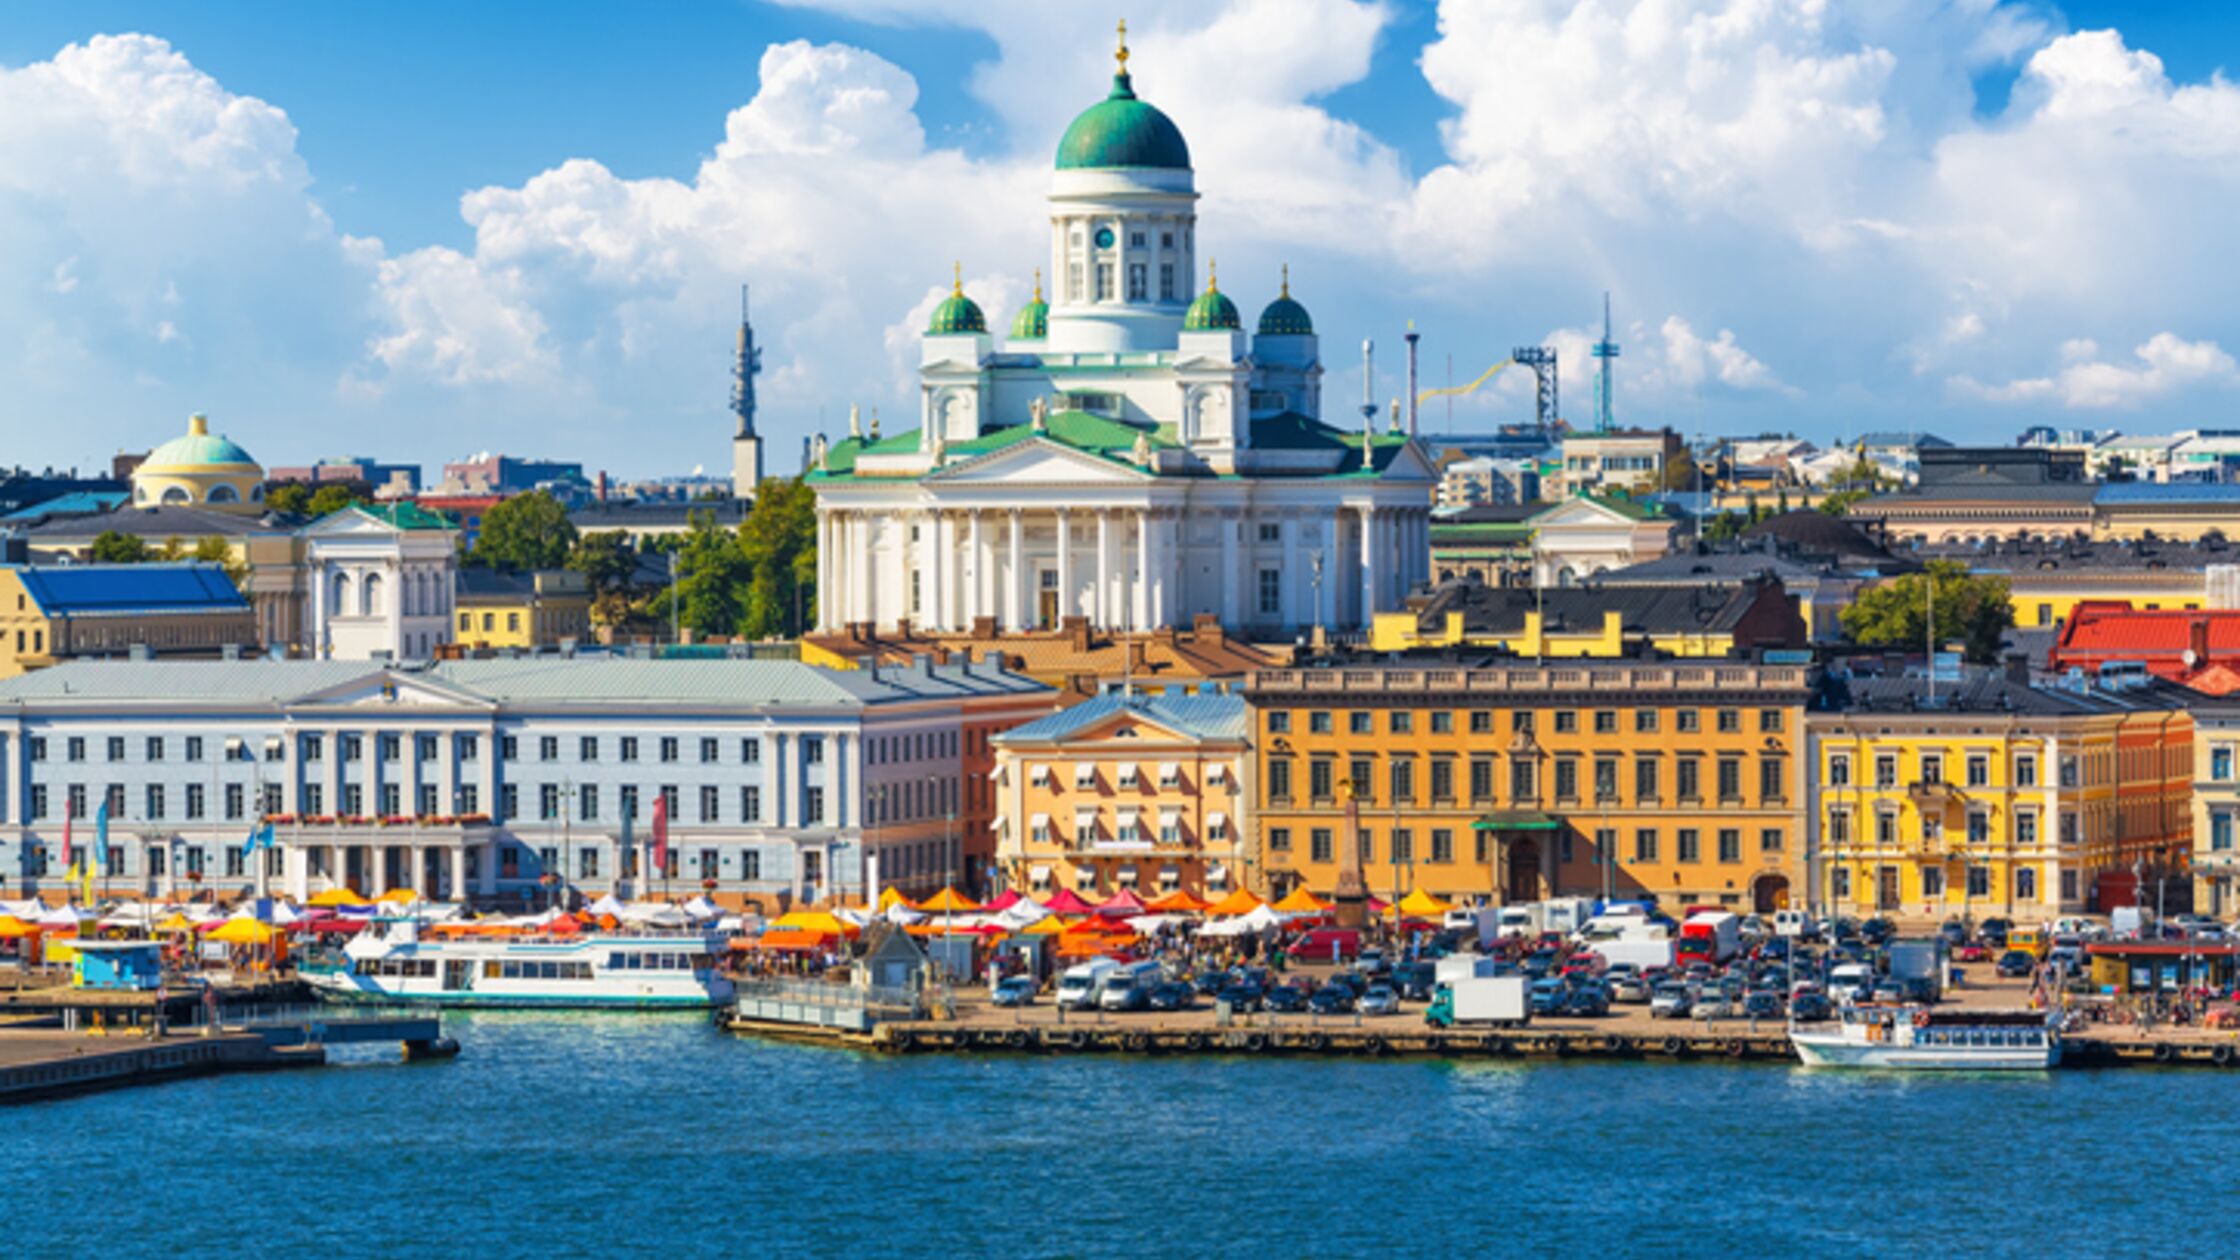 Auswandern nach Finnland: Machen Sie das Land der 1.000 Seen zu Ihrer Heimat